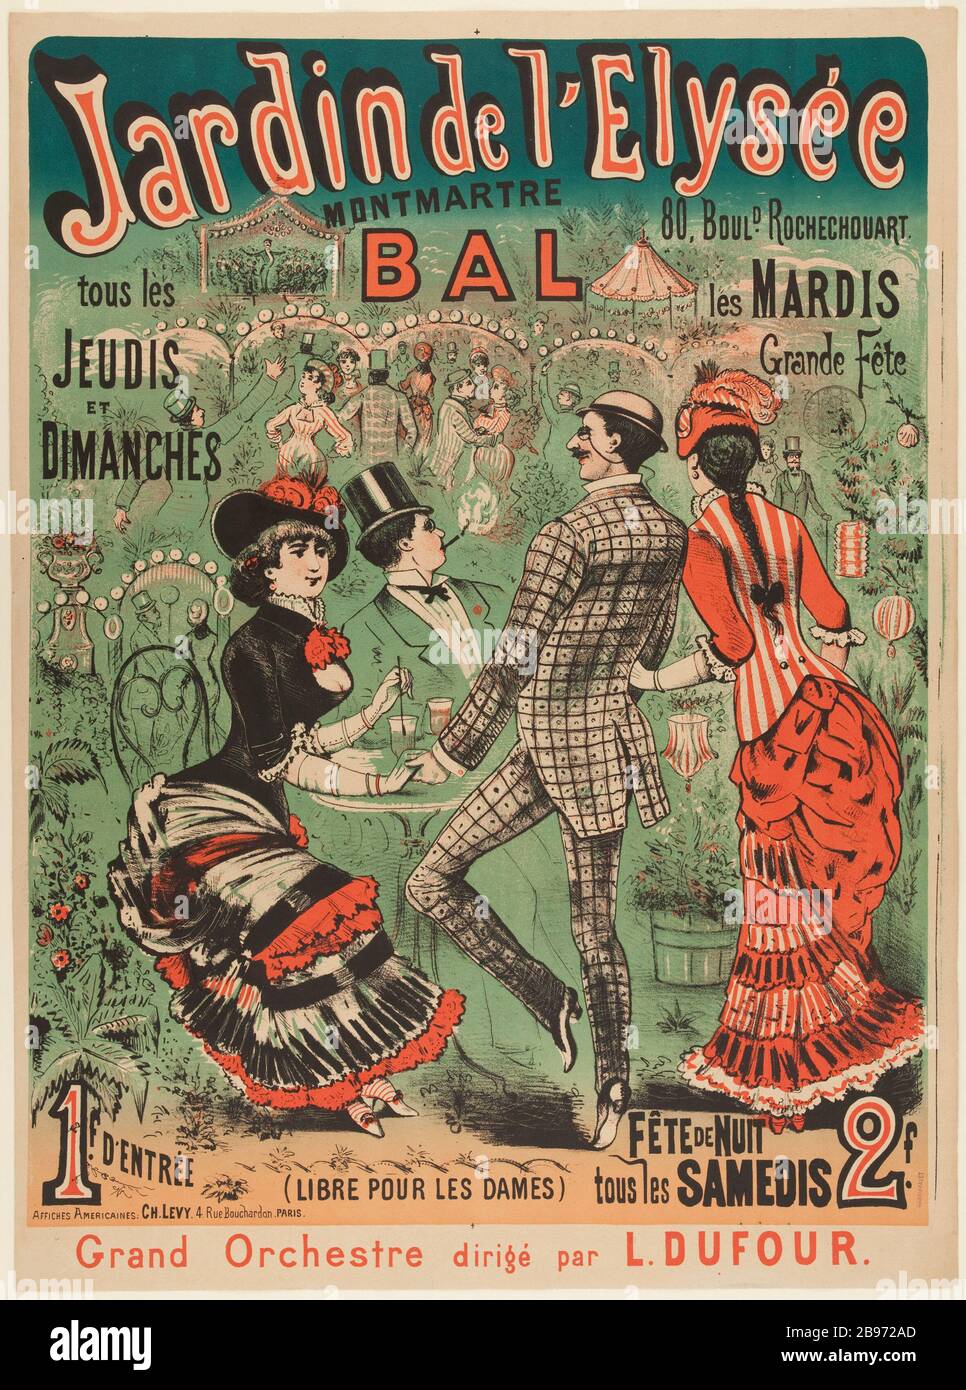 GARDEN ELYSEE MONTMARTRE, BAL 'Jardin de l'Elysée Montmartre, Bal'. Lithographie, 1880-1900. Paris, musée Carnavalet. Stock Photo